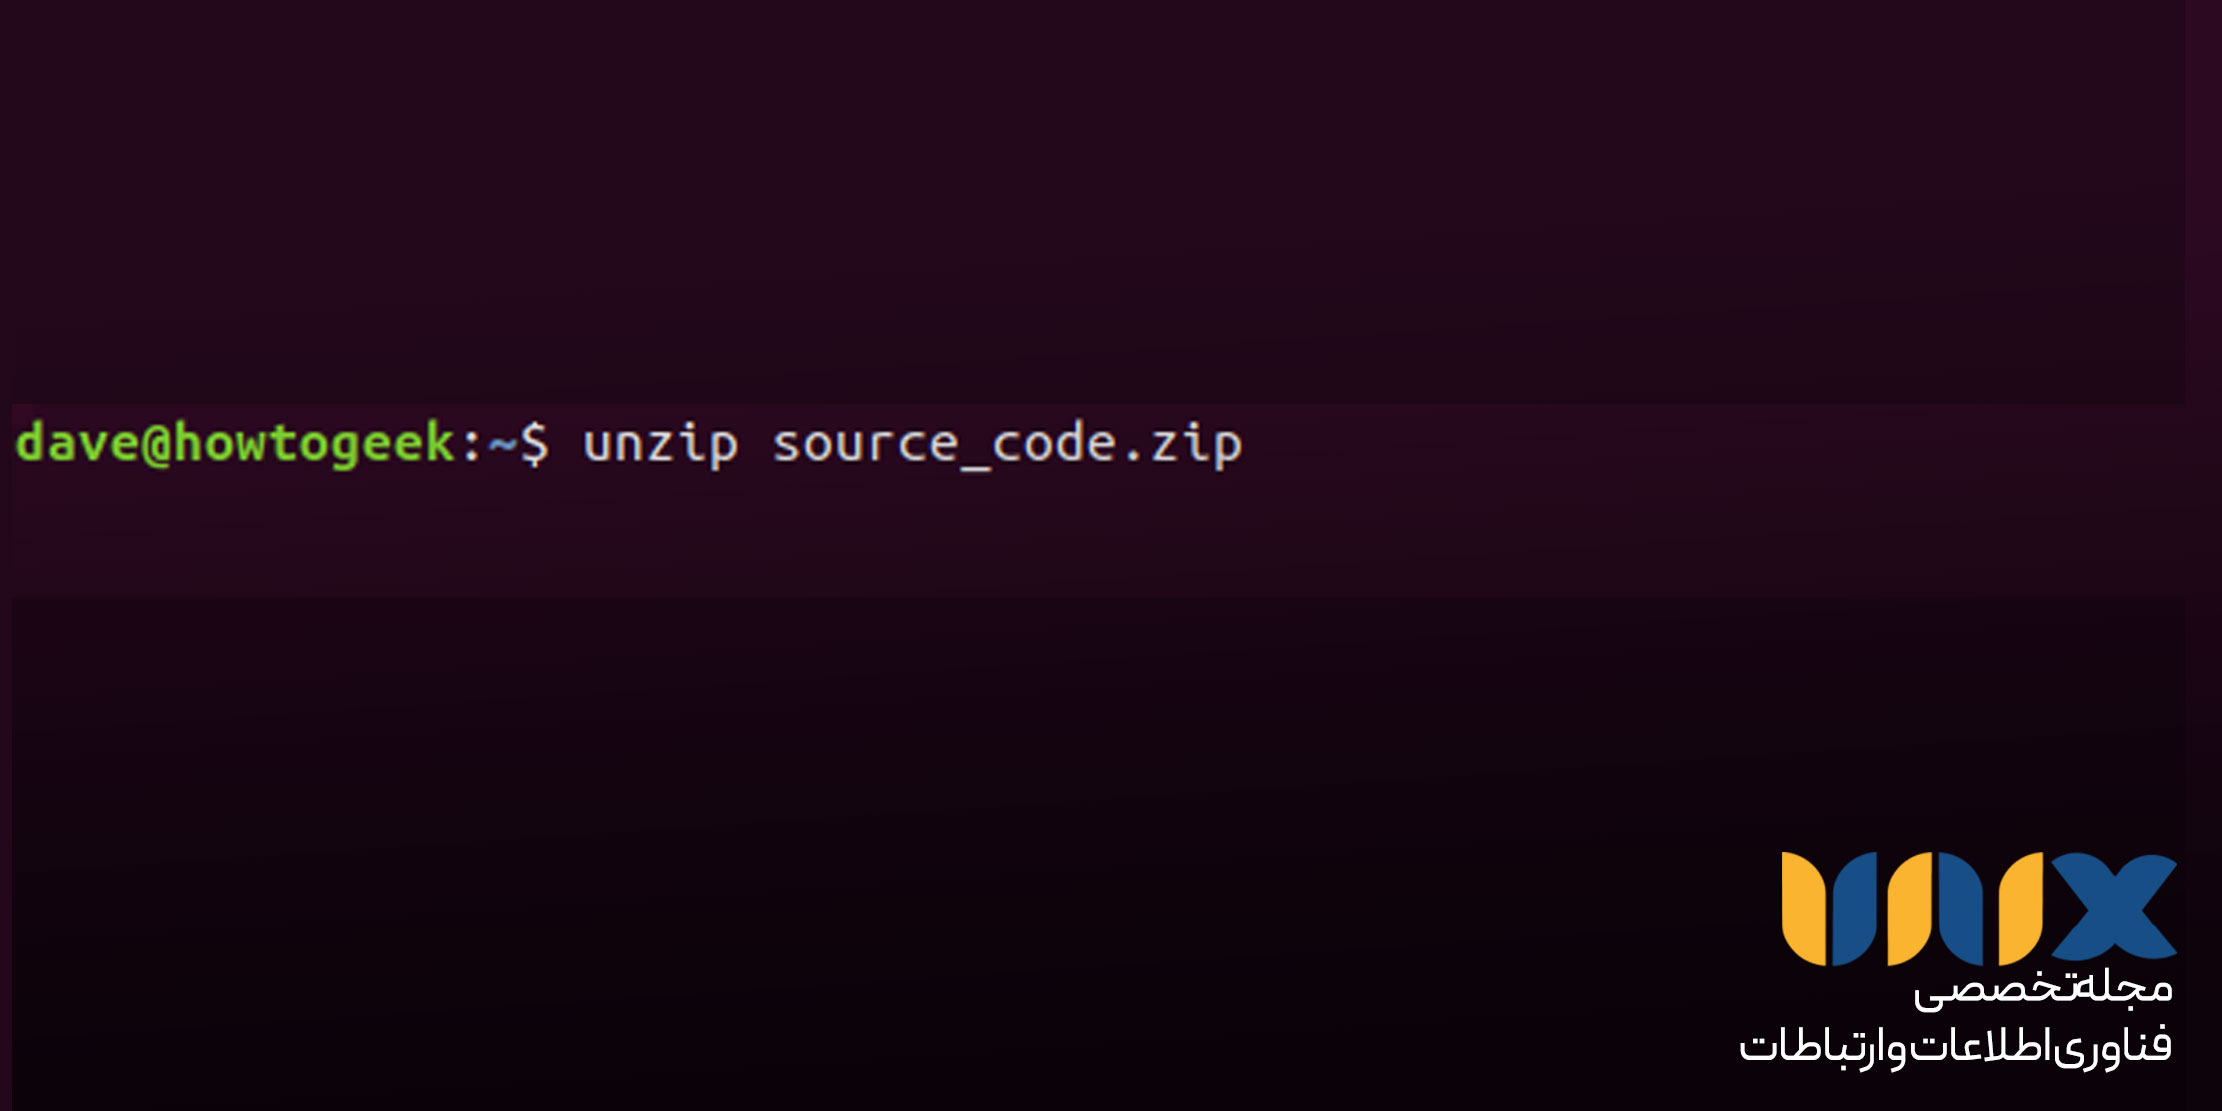 آنزیپ کردن با دستور unzip در لینوکس